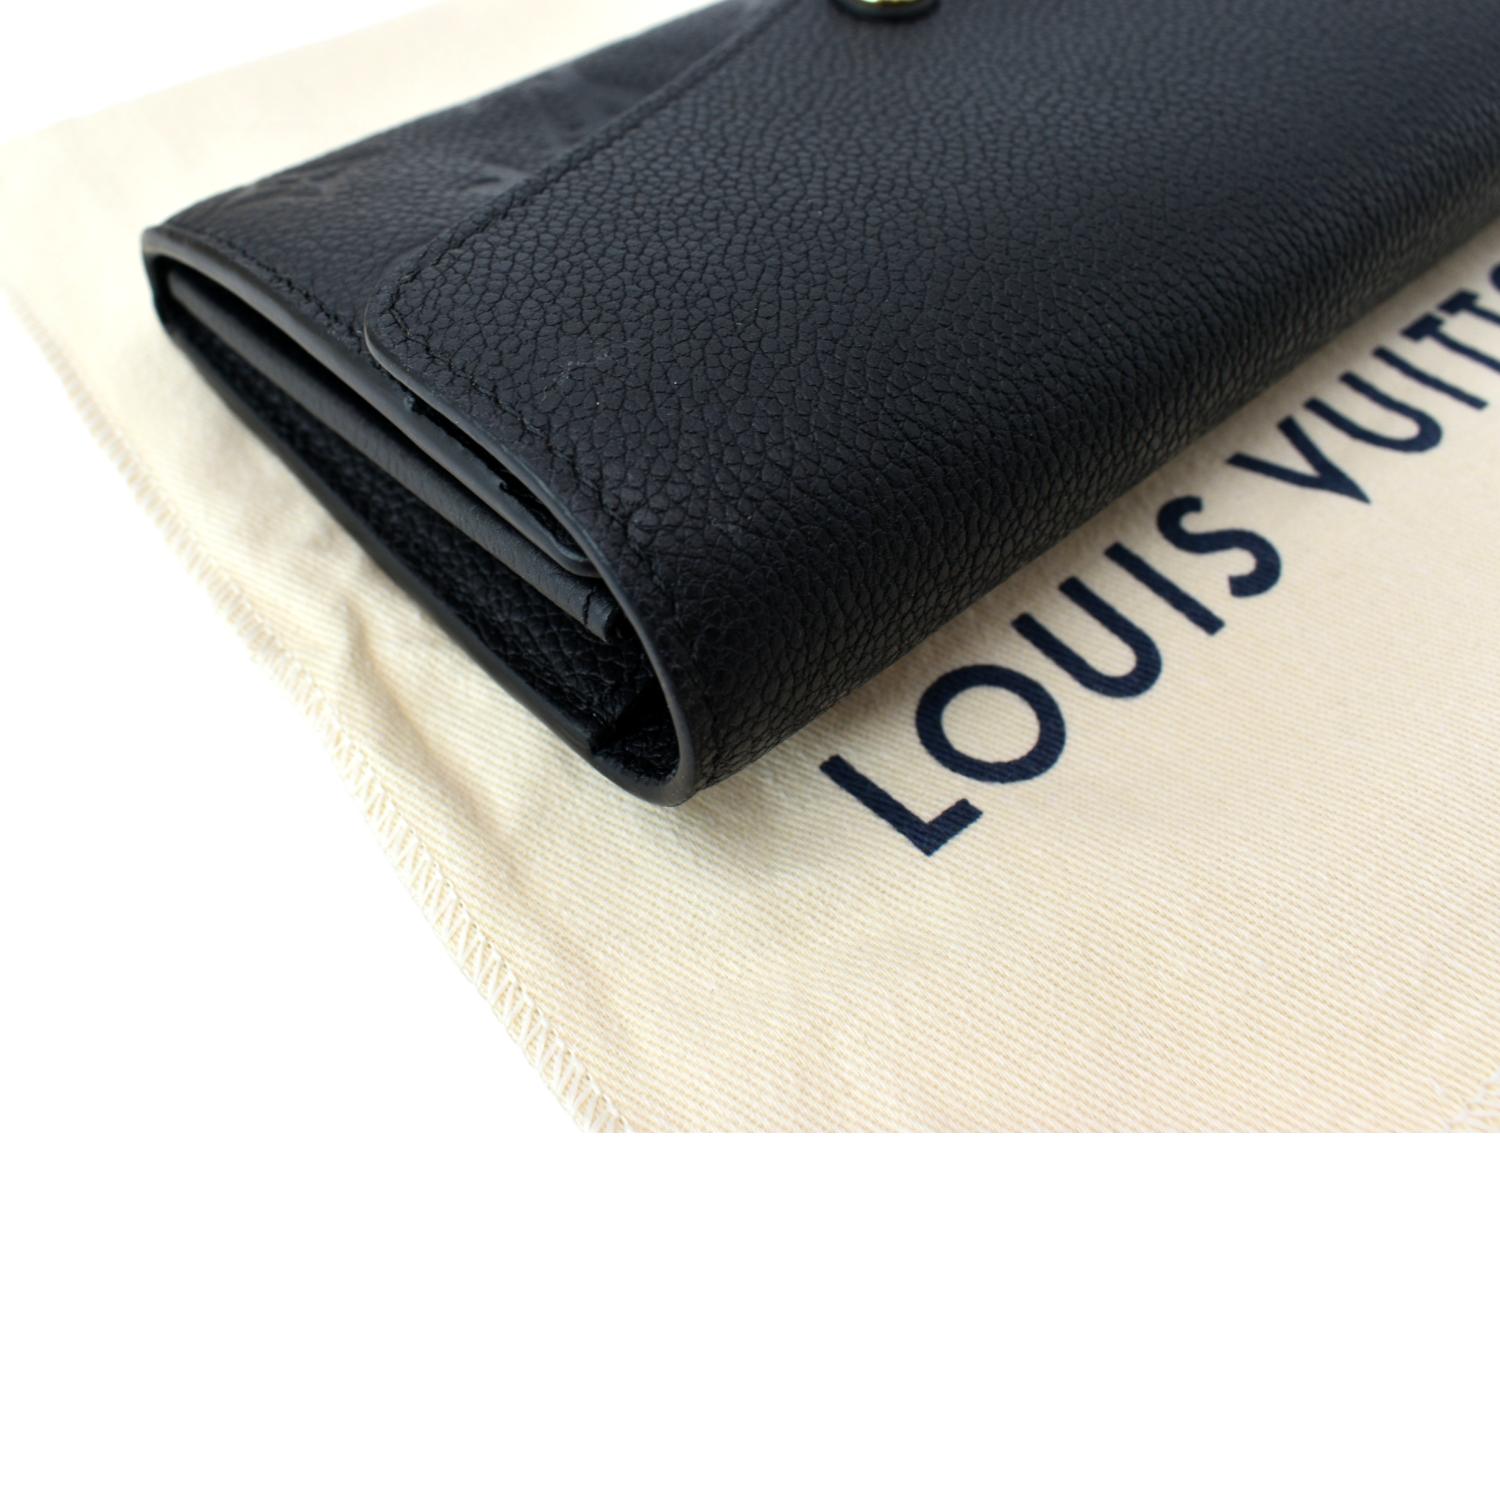 Louis Vuitton Black Monogram Empreinte Leather Sarah Wallet – Italy Station